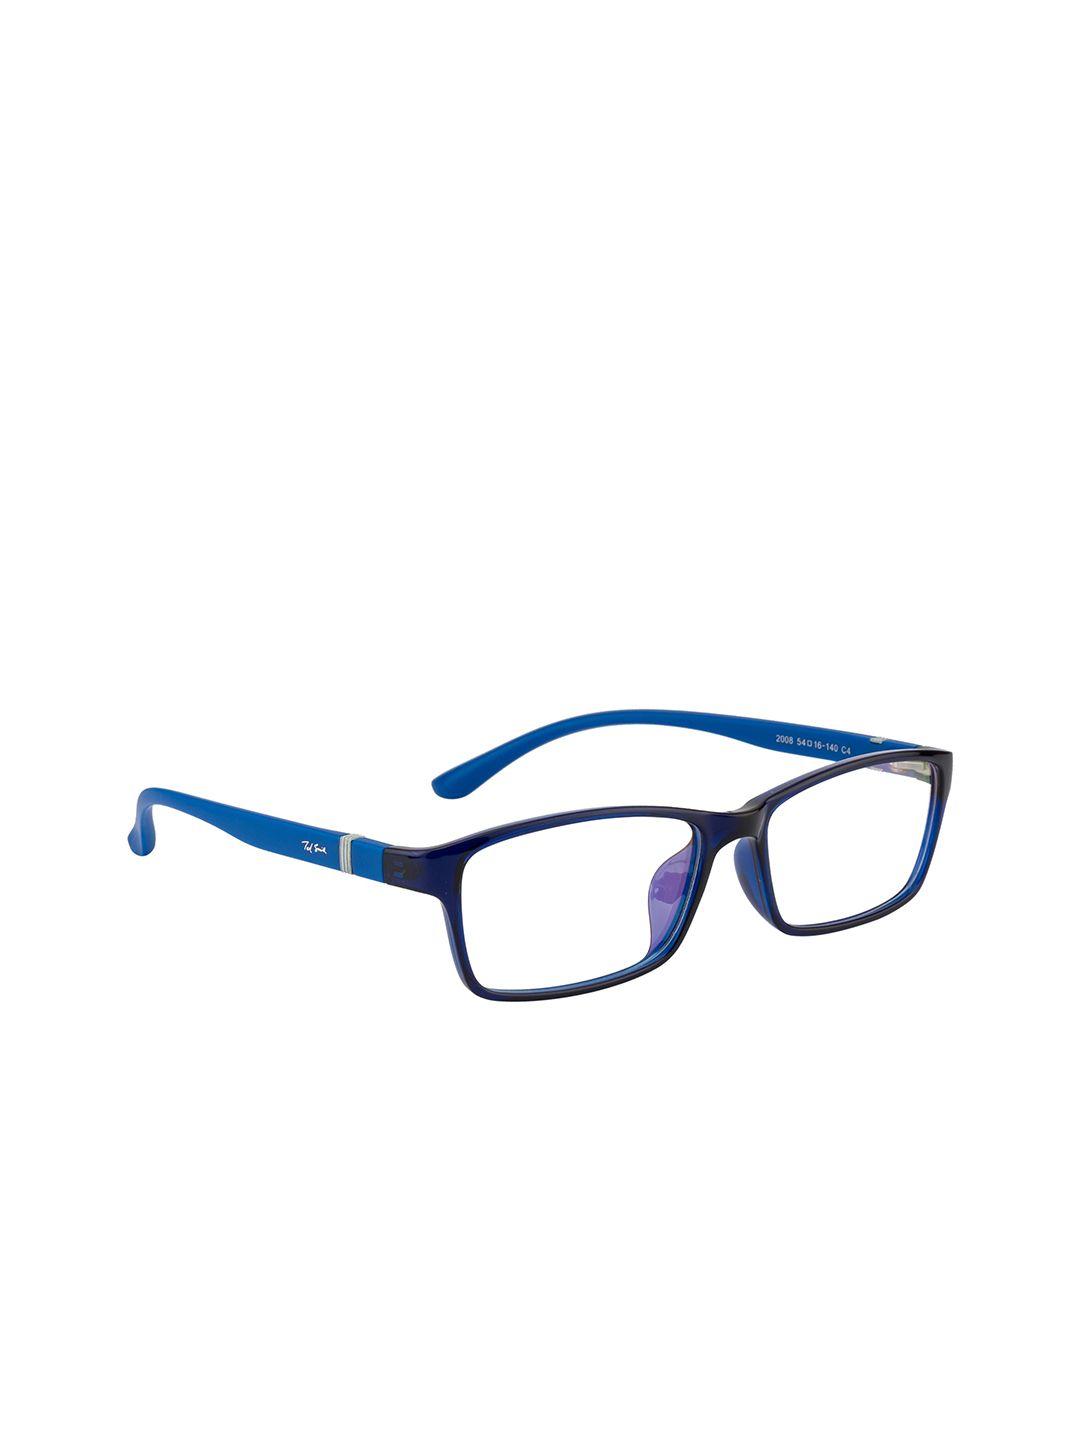 ted smith unisex blue full rim wayfarer frames eyeglasses